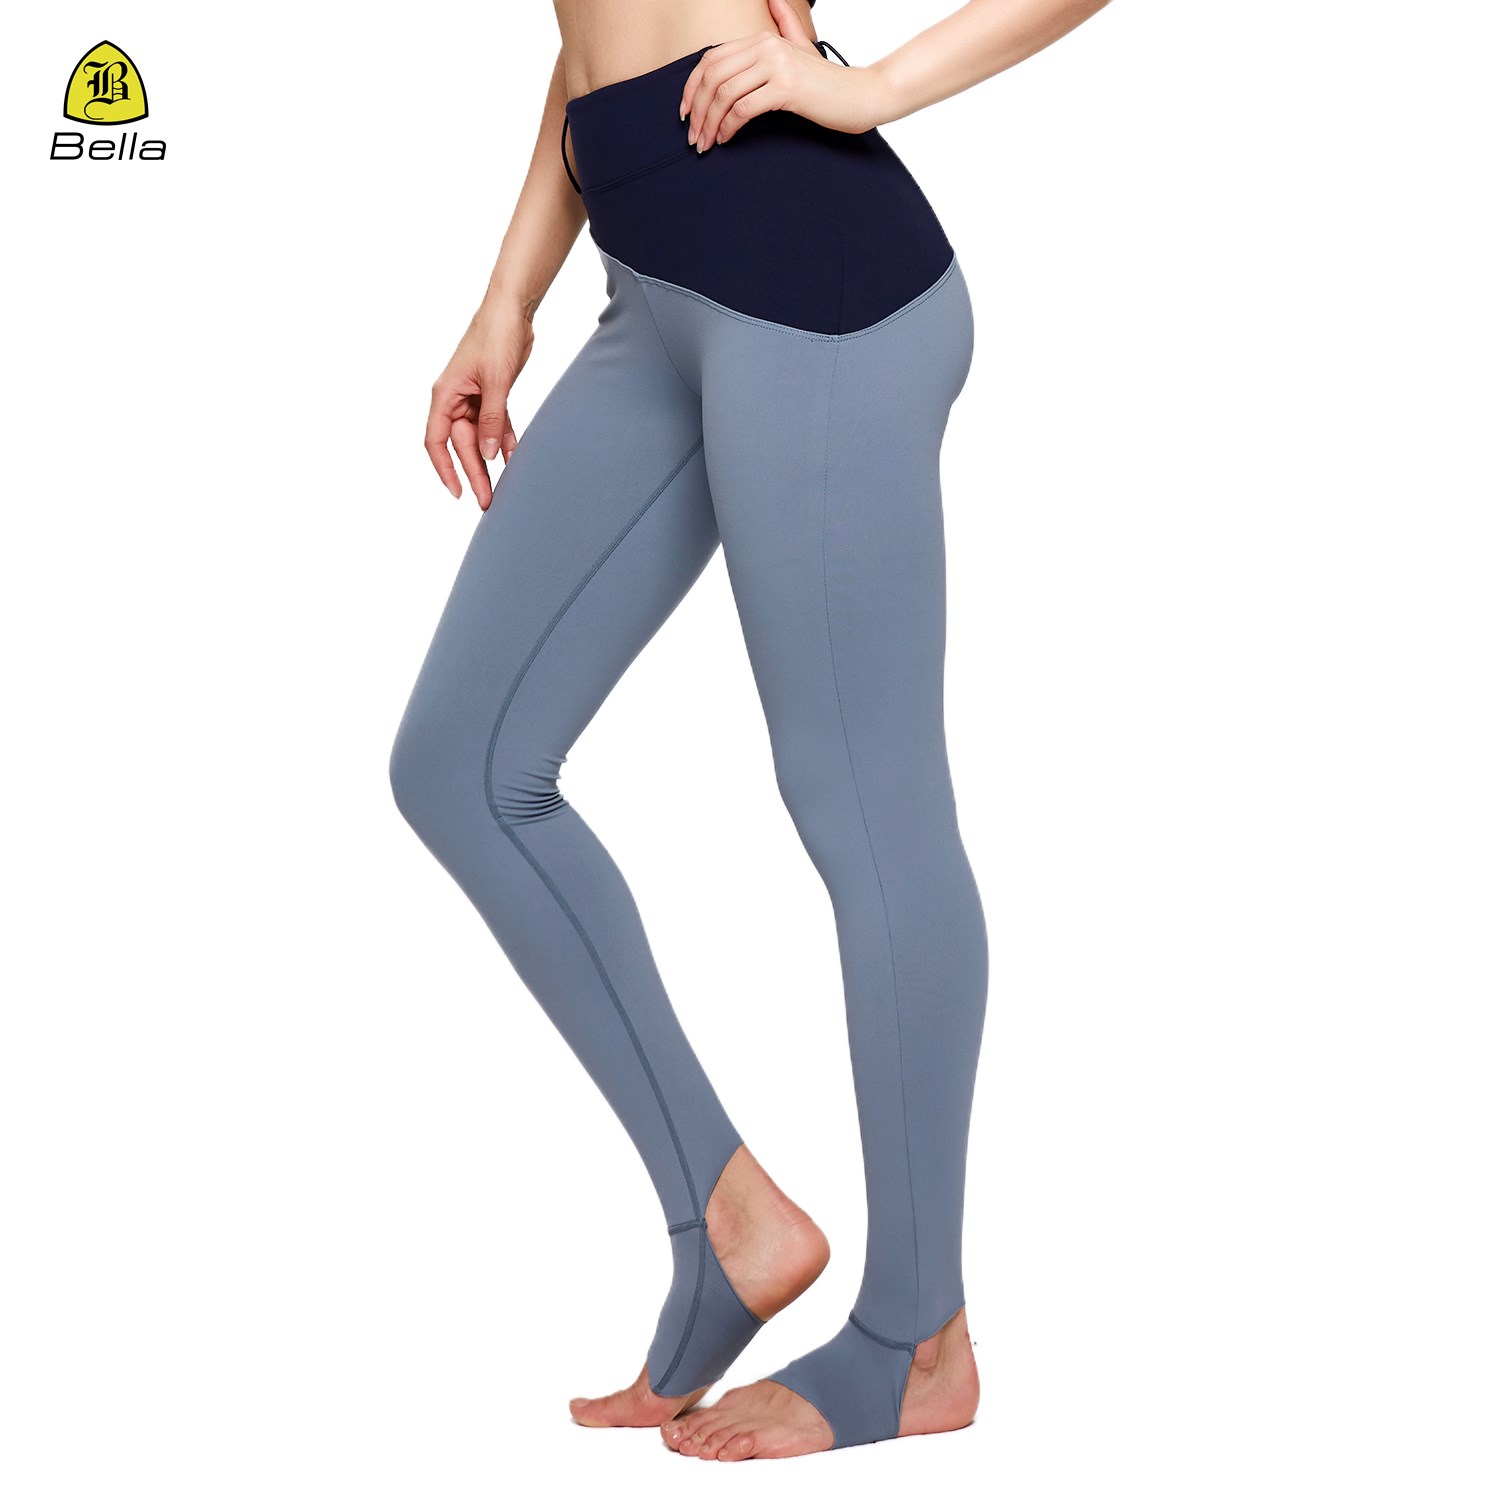 Belt Buckle Design Comfy Soft Compression Yoga Pants